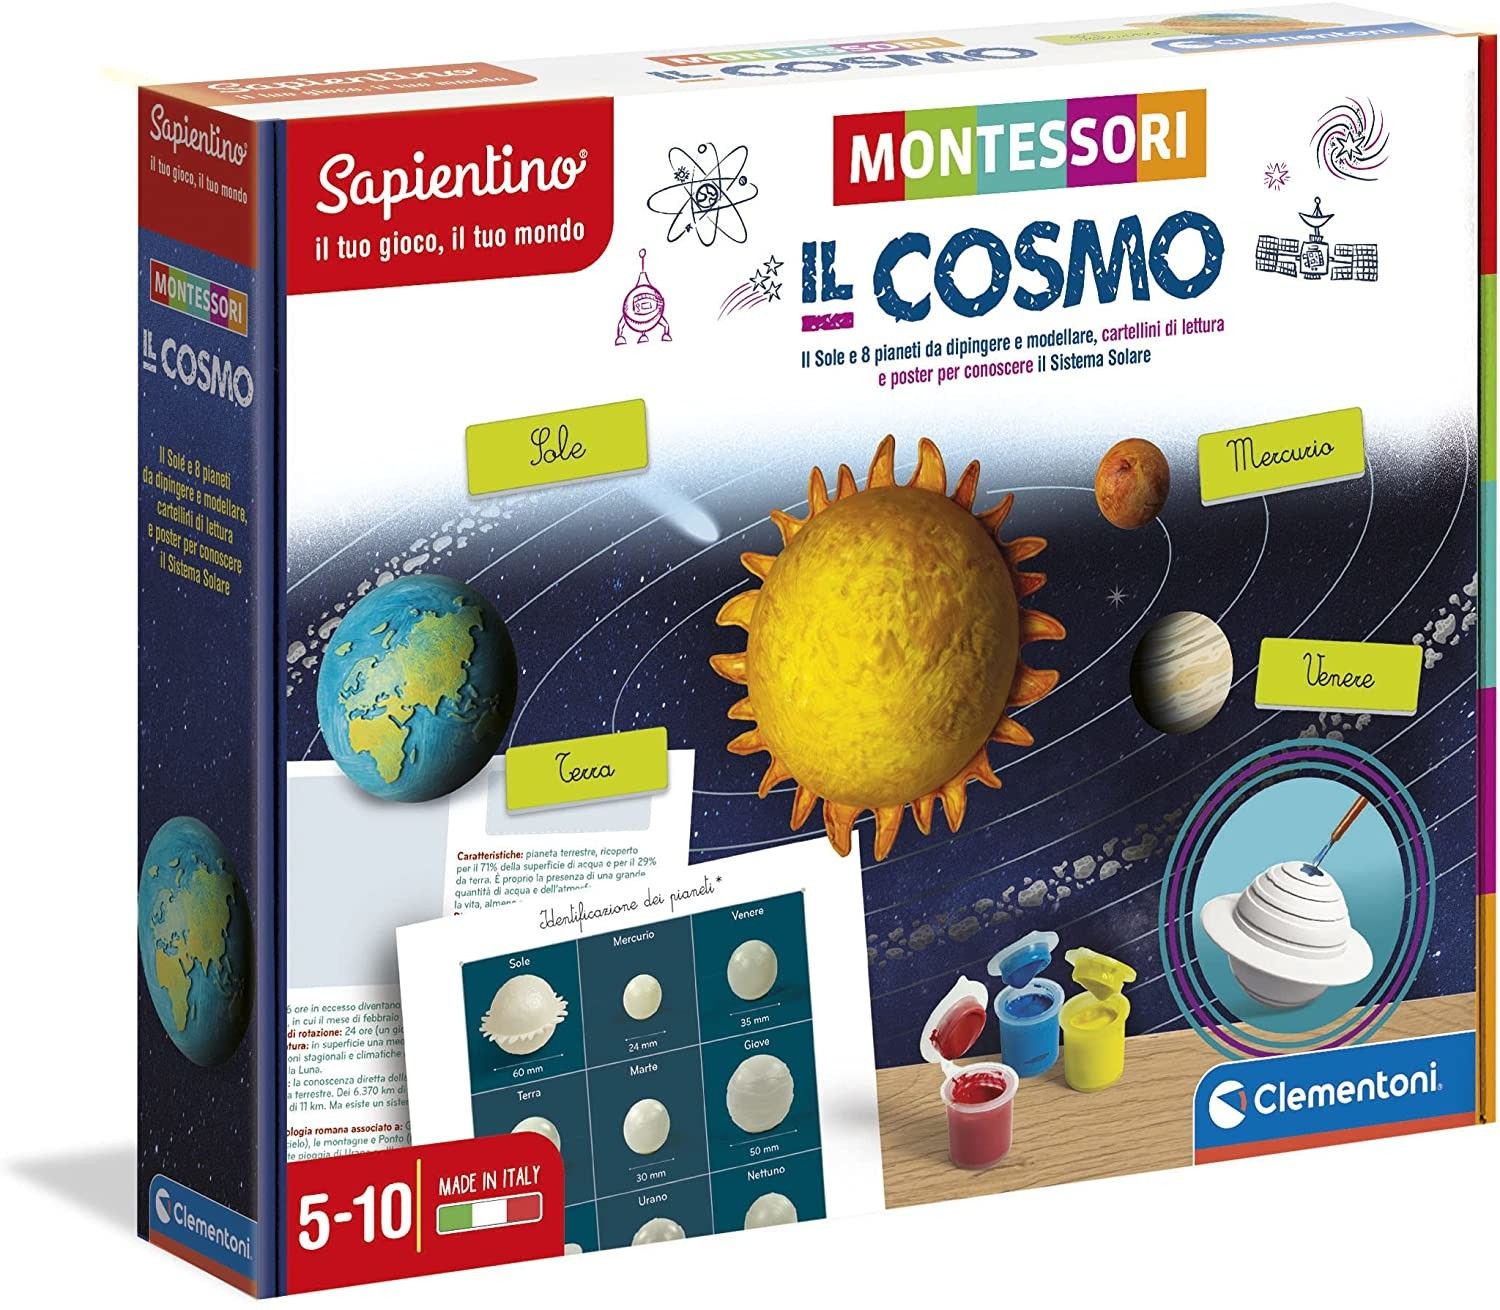 Clementoni- Sapientino Cosmo Montessori 5 Anni, Gioco educativo per Esplorare Il Sistema Solare, Sviluppo linguaggio-Made in Italy, Multicolore, 16359